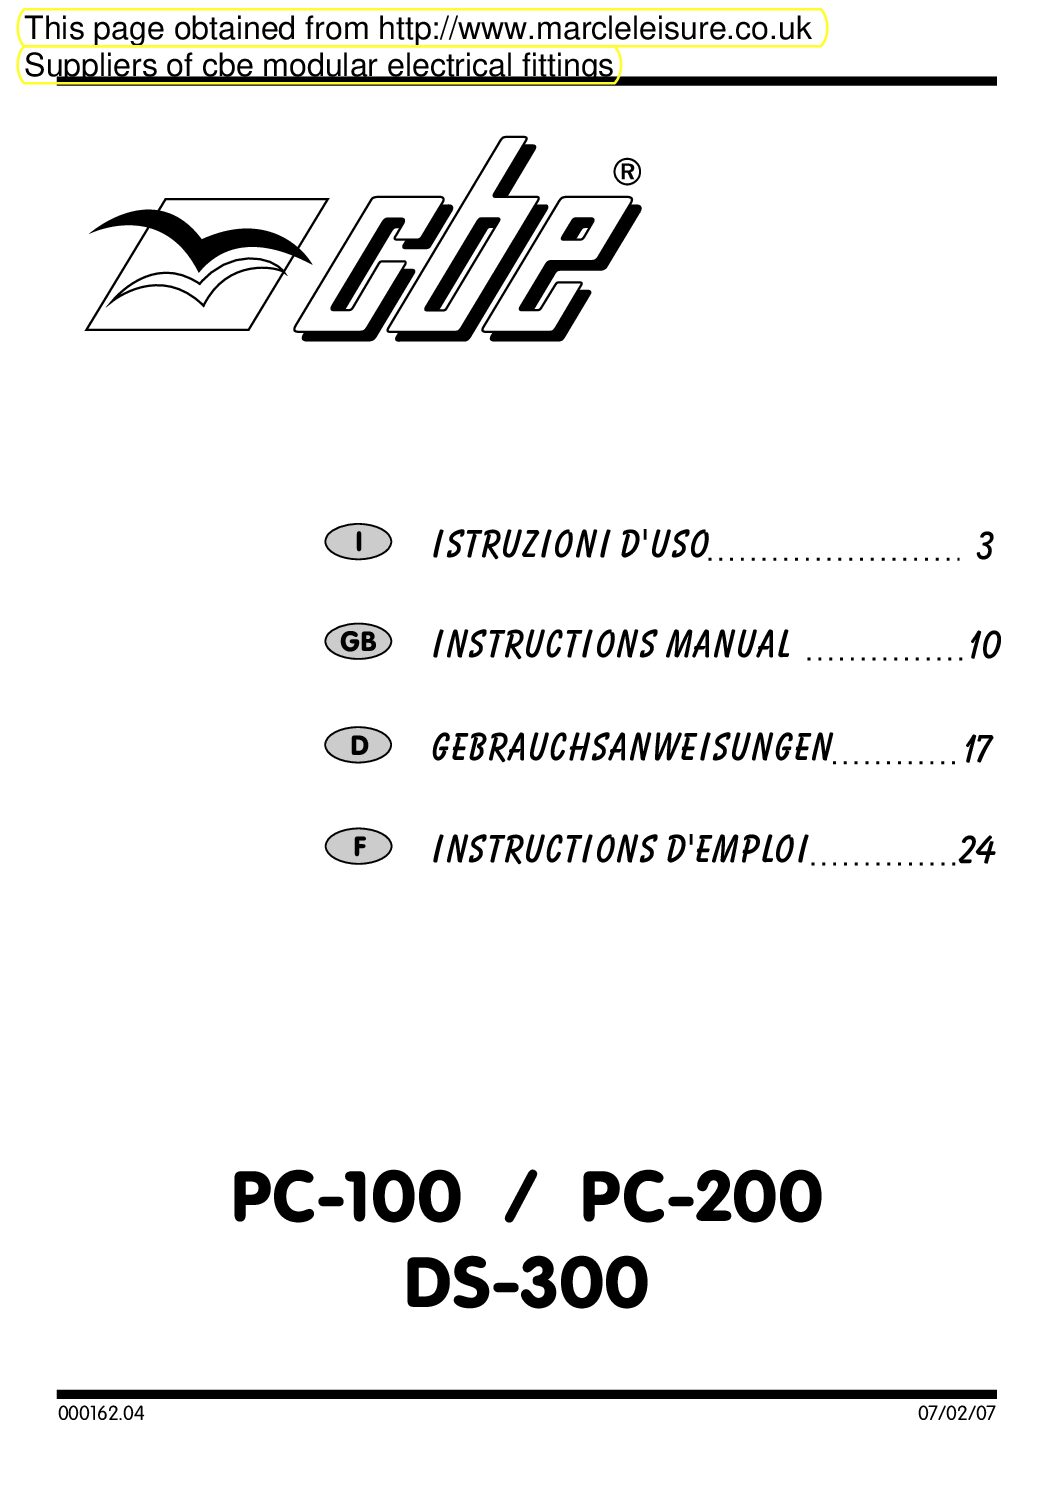 CBE PC-200 DS-300 Bedienungsanleitung